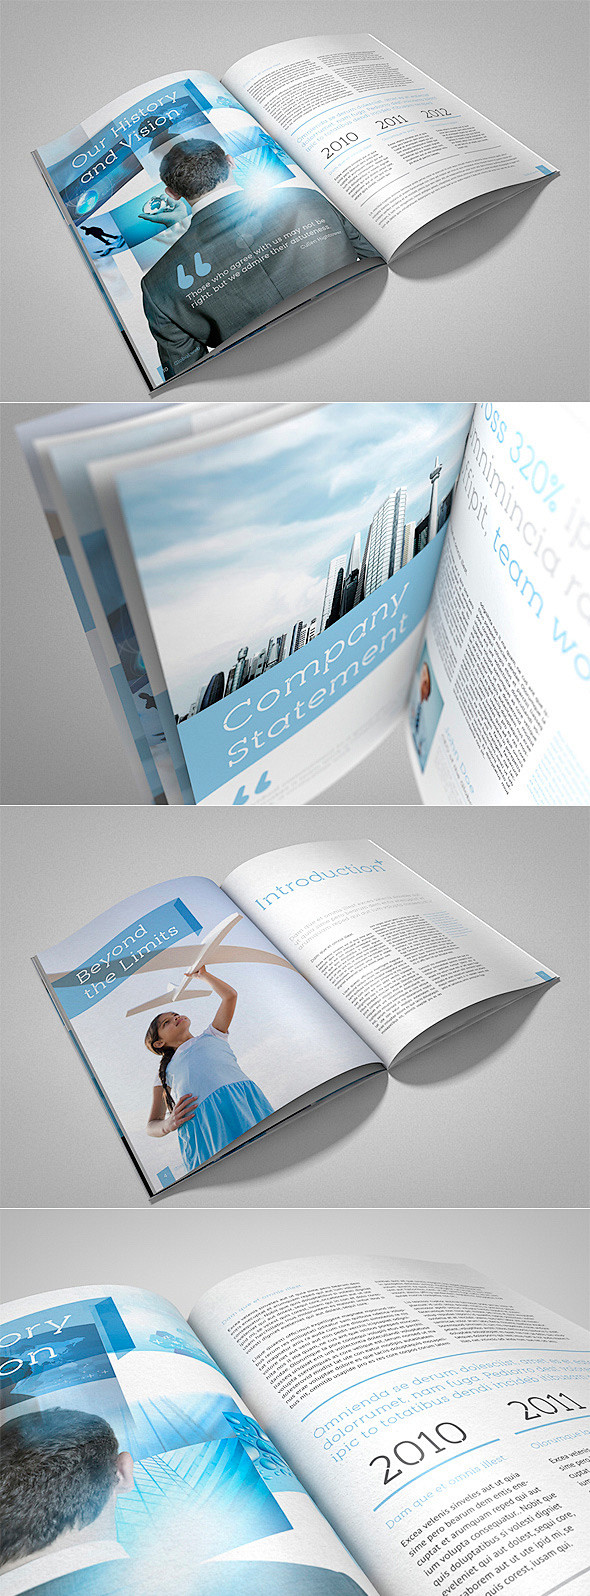 一款蓝色简约风格的宣传册 - 样本手册 ...